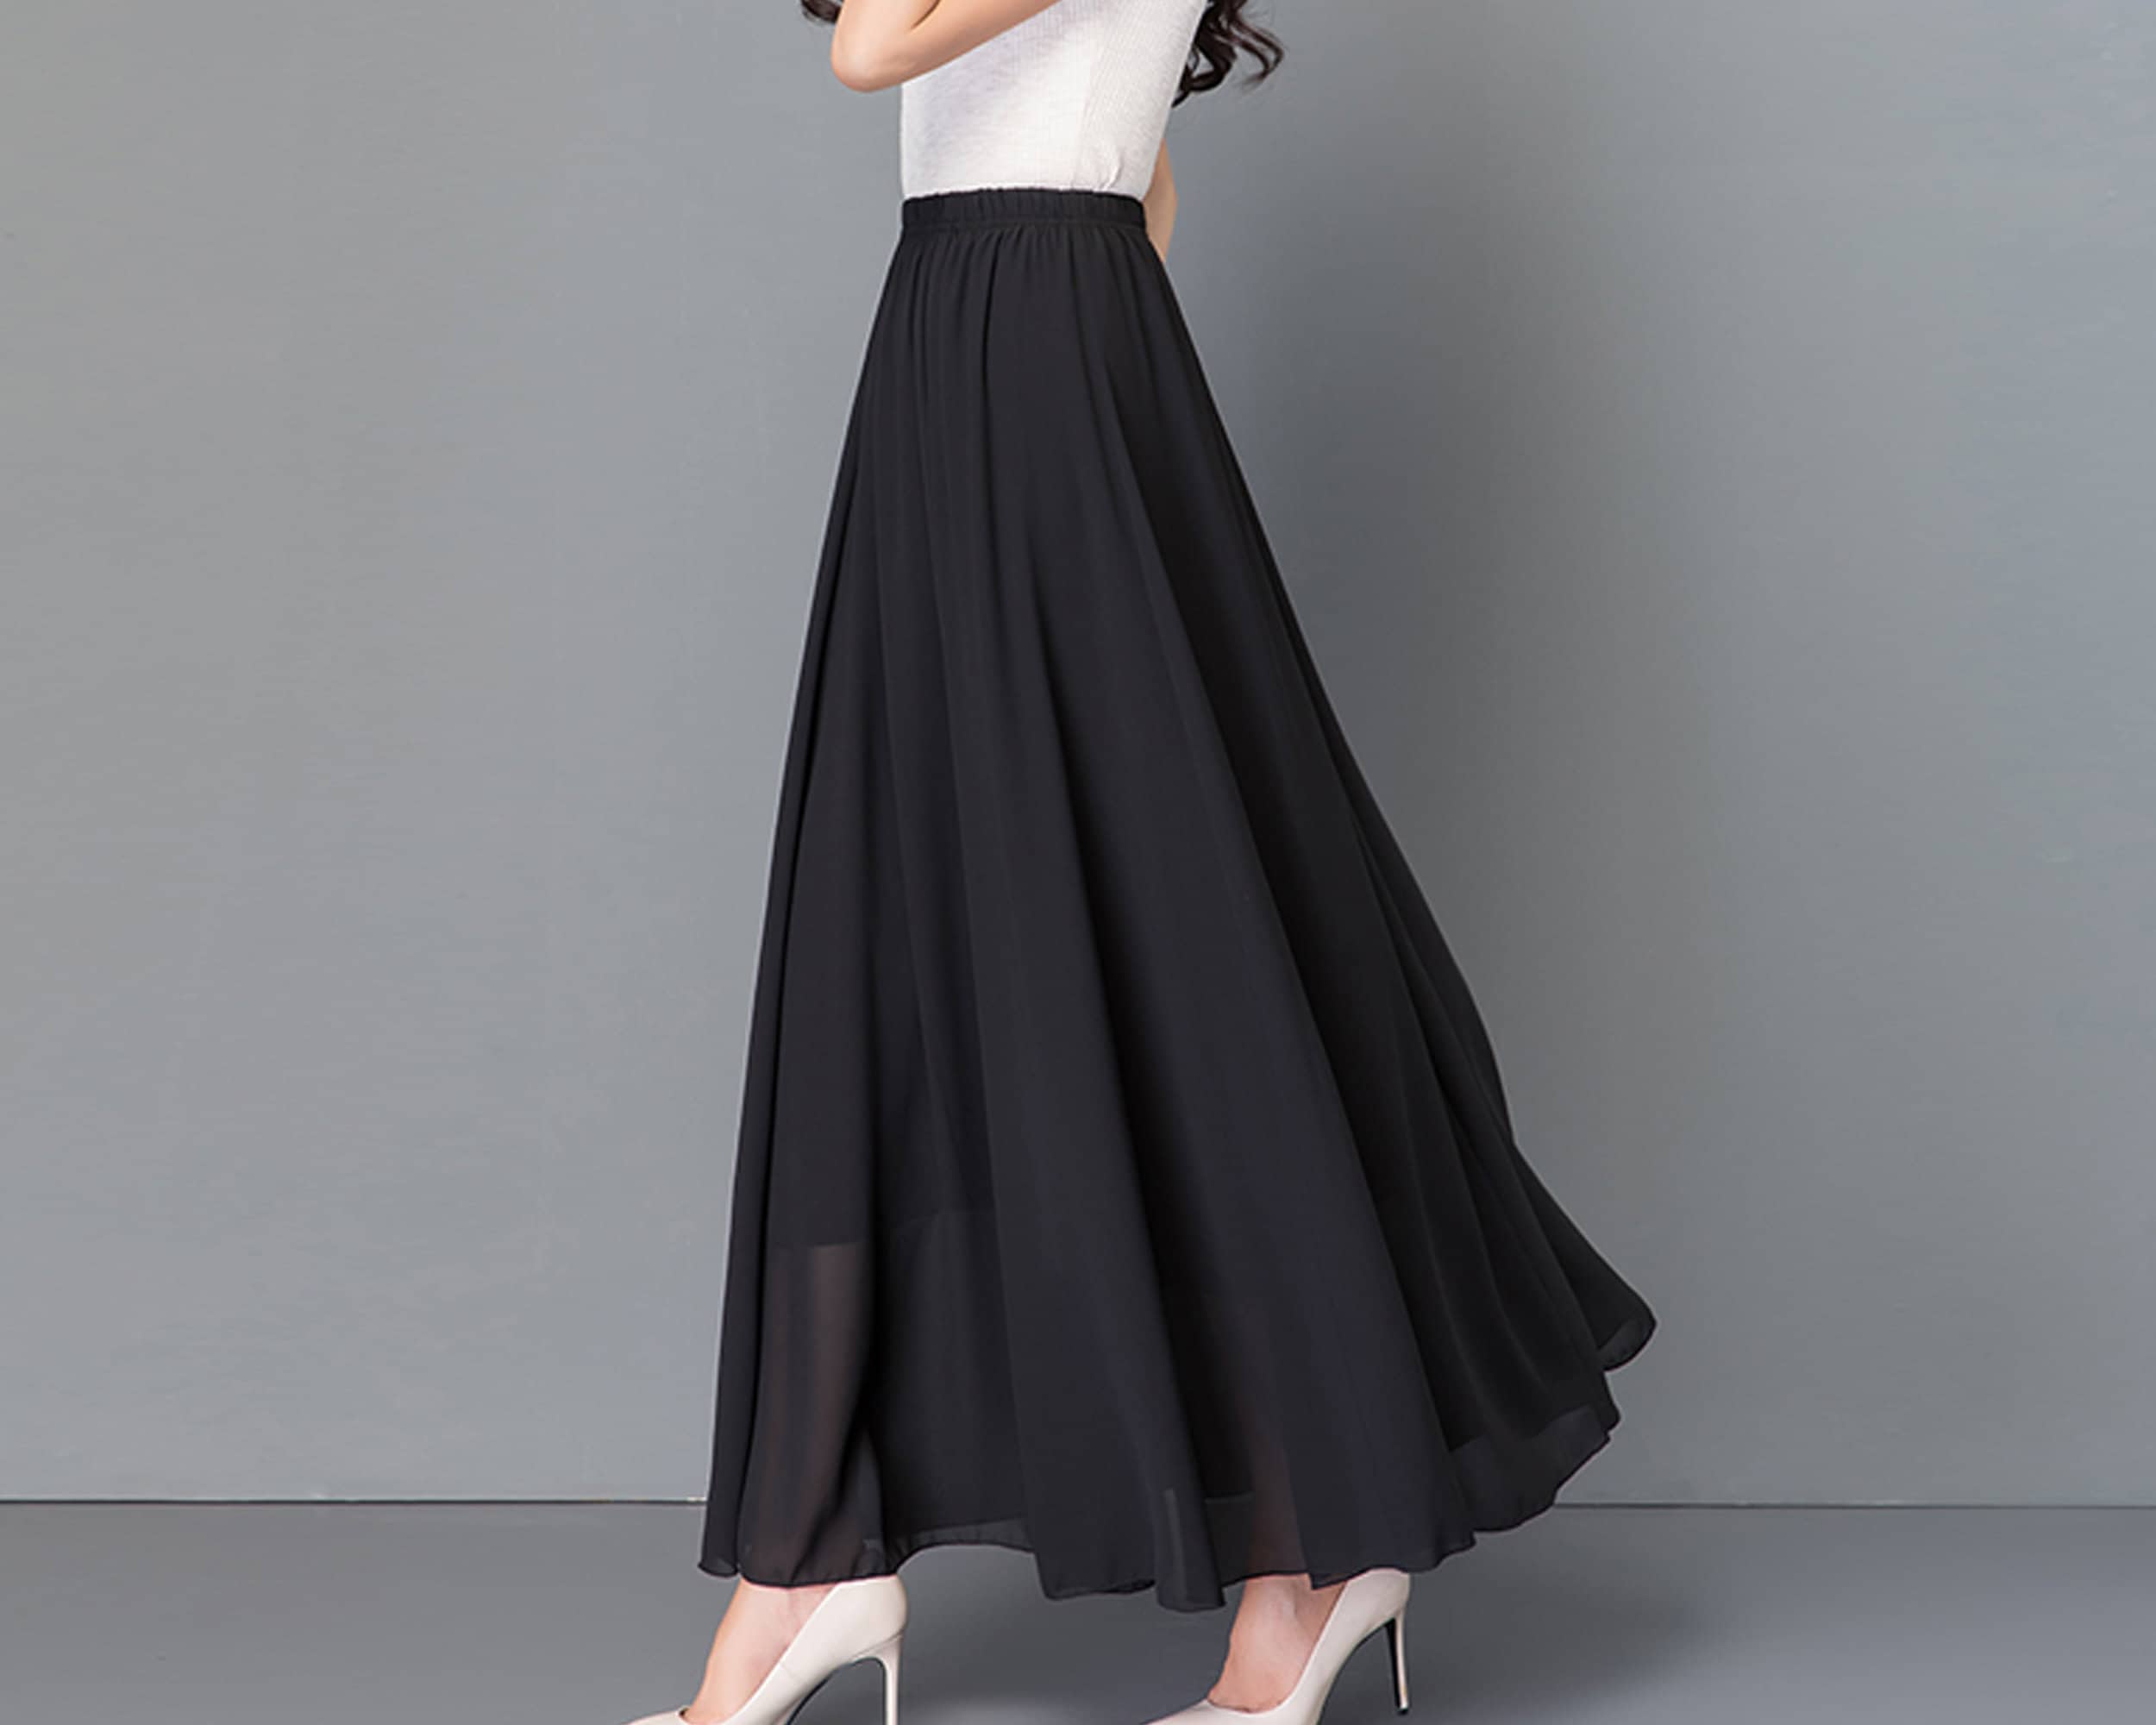 Women's Maxi Skirt Elastic Waist Skirt Flare Skirt - Etsy